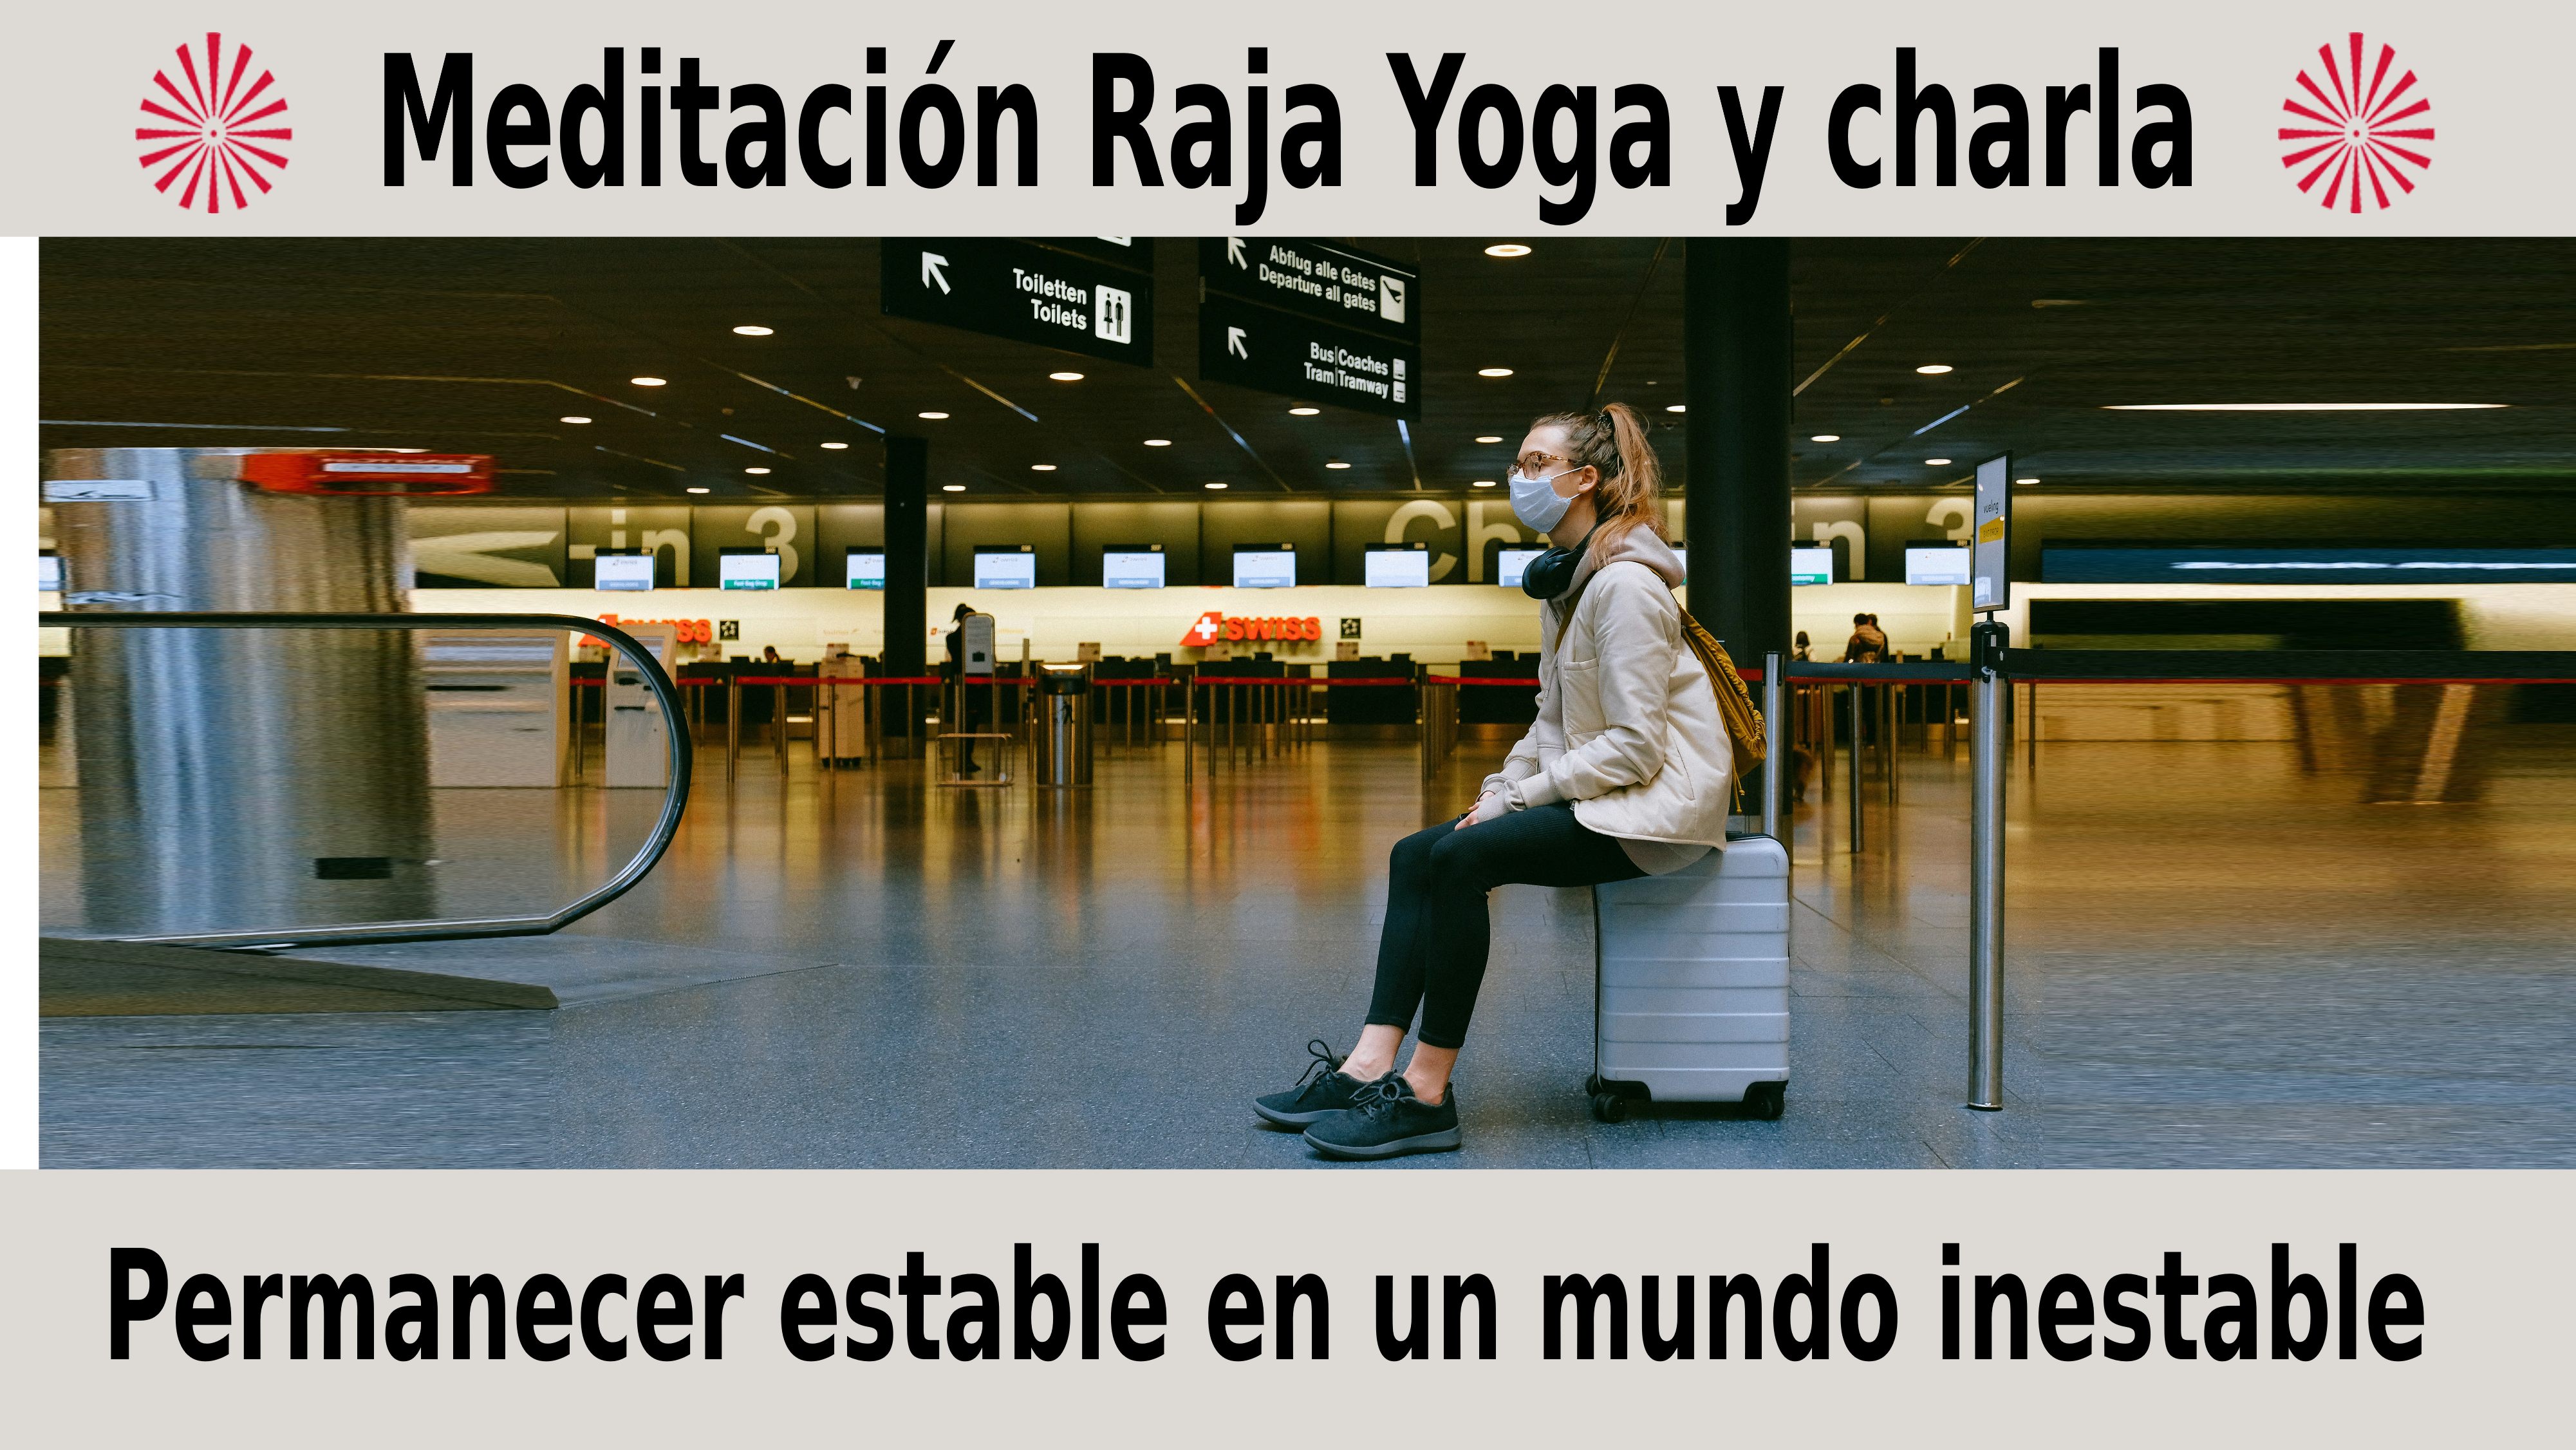 Meditación Raja Yoga y charla: Permanecer estable en un mundo inestable (30 Noviembre 2020) On-line desde Madrid